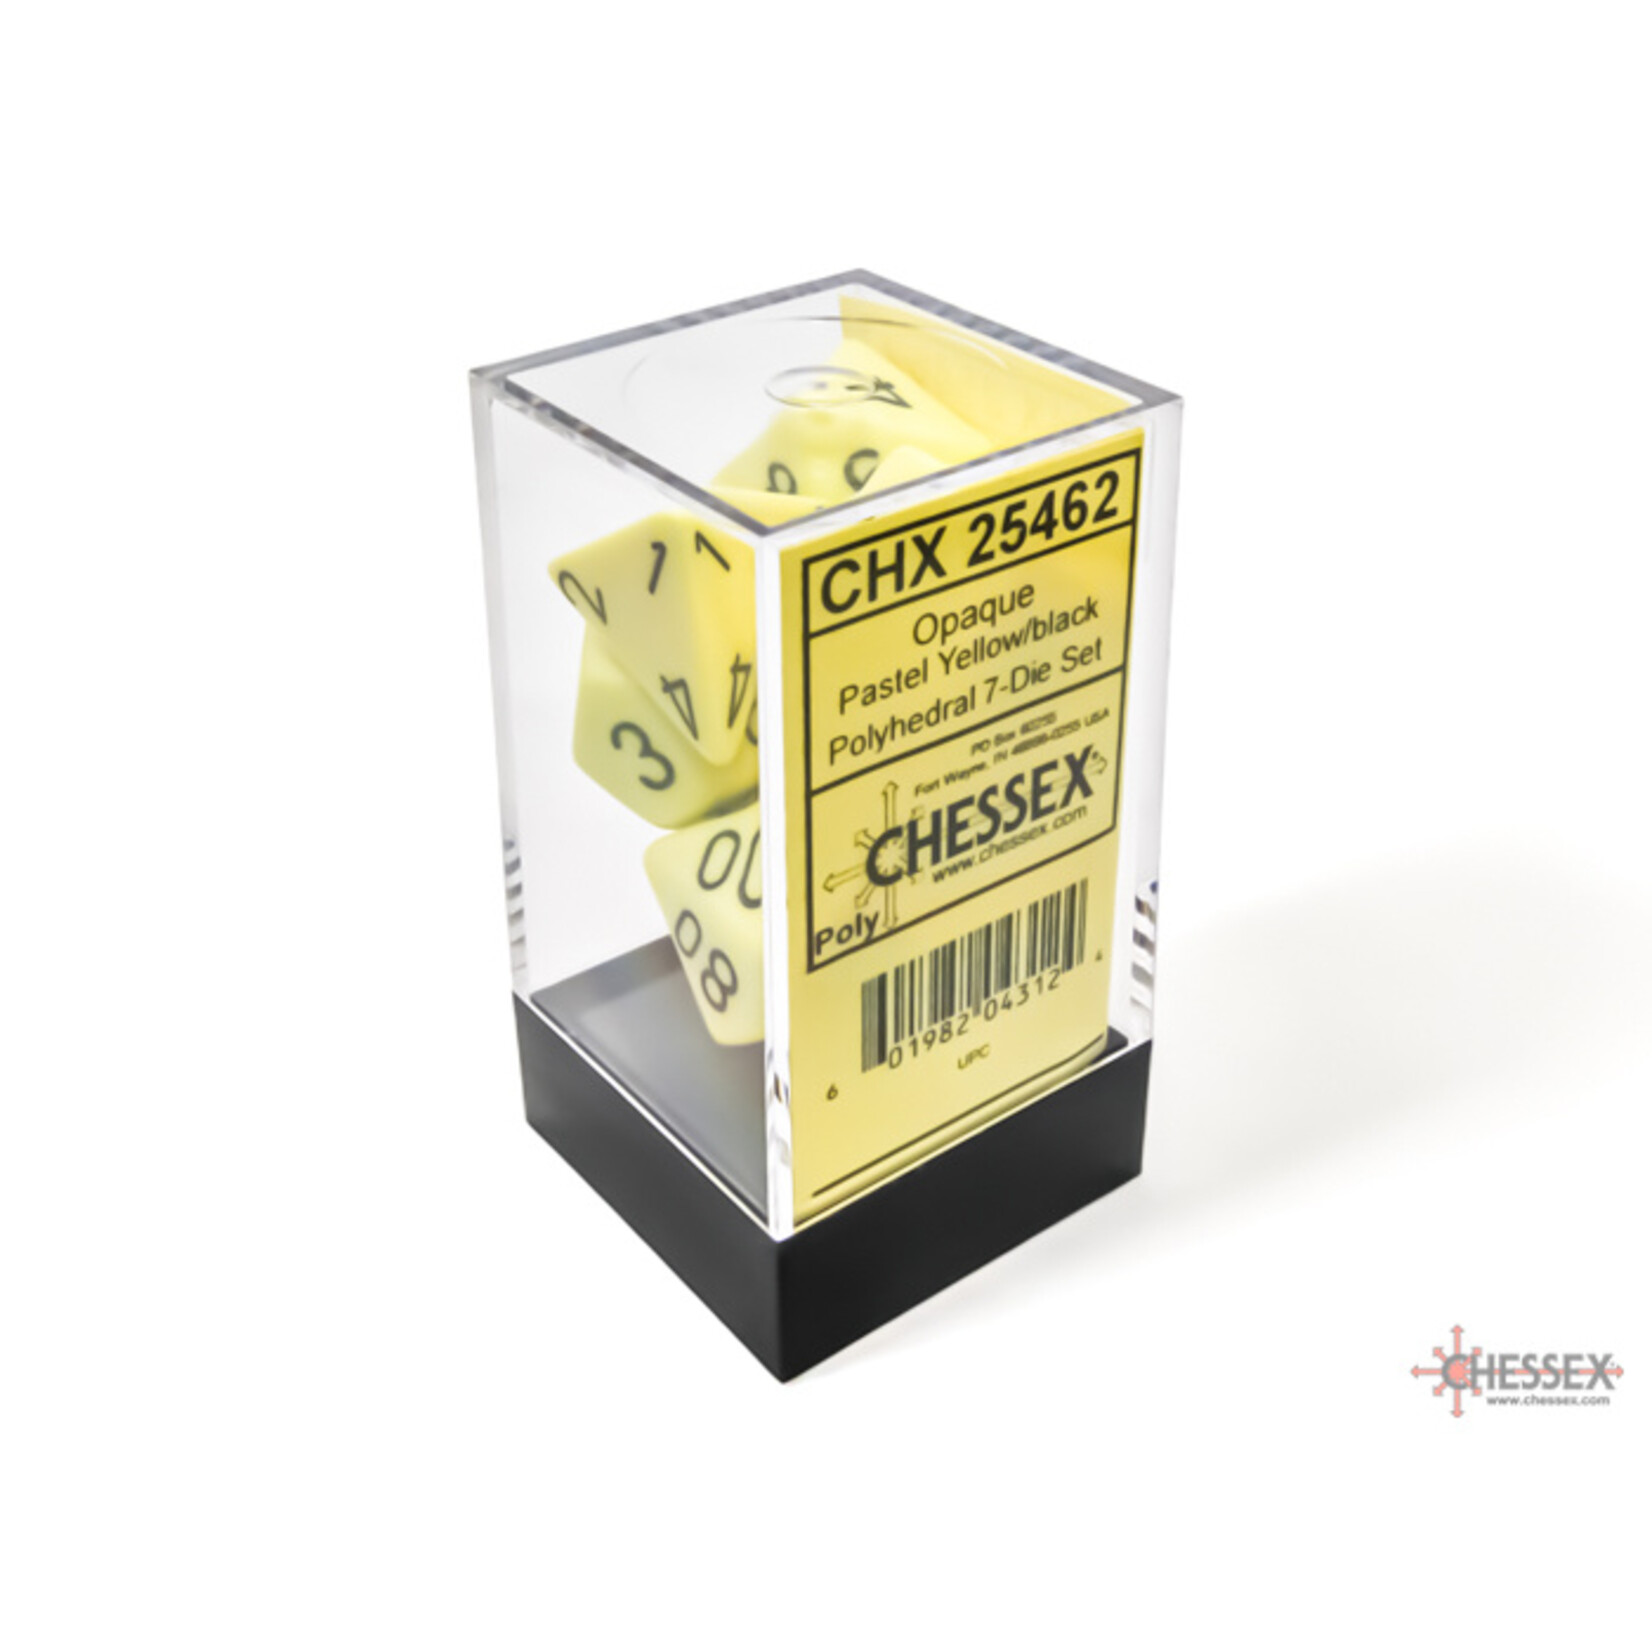 Chessex Chessex 7-Die set Opaque Pastel - Yellow/Black